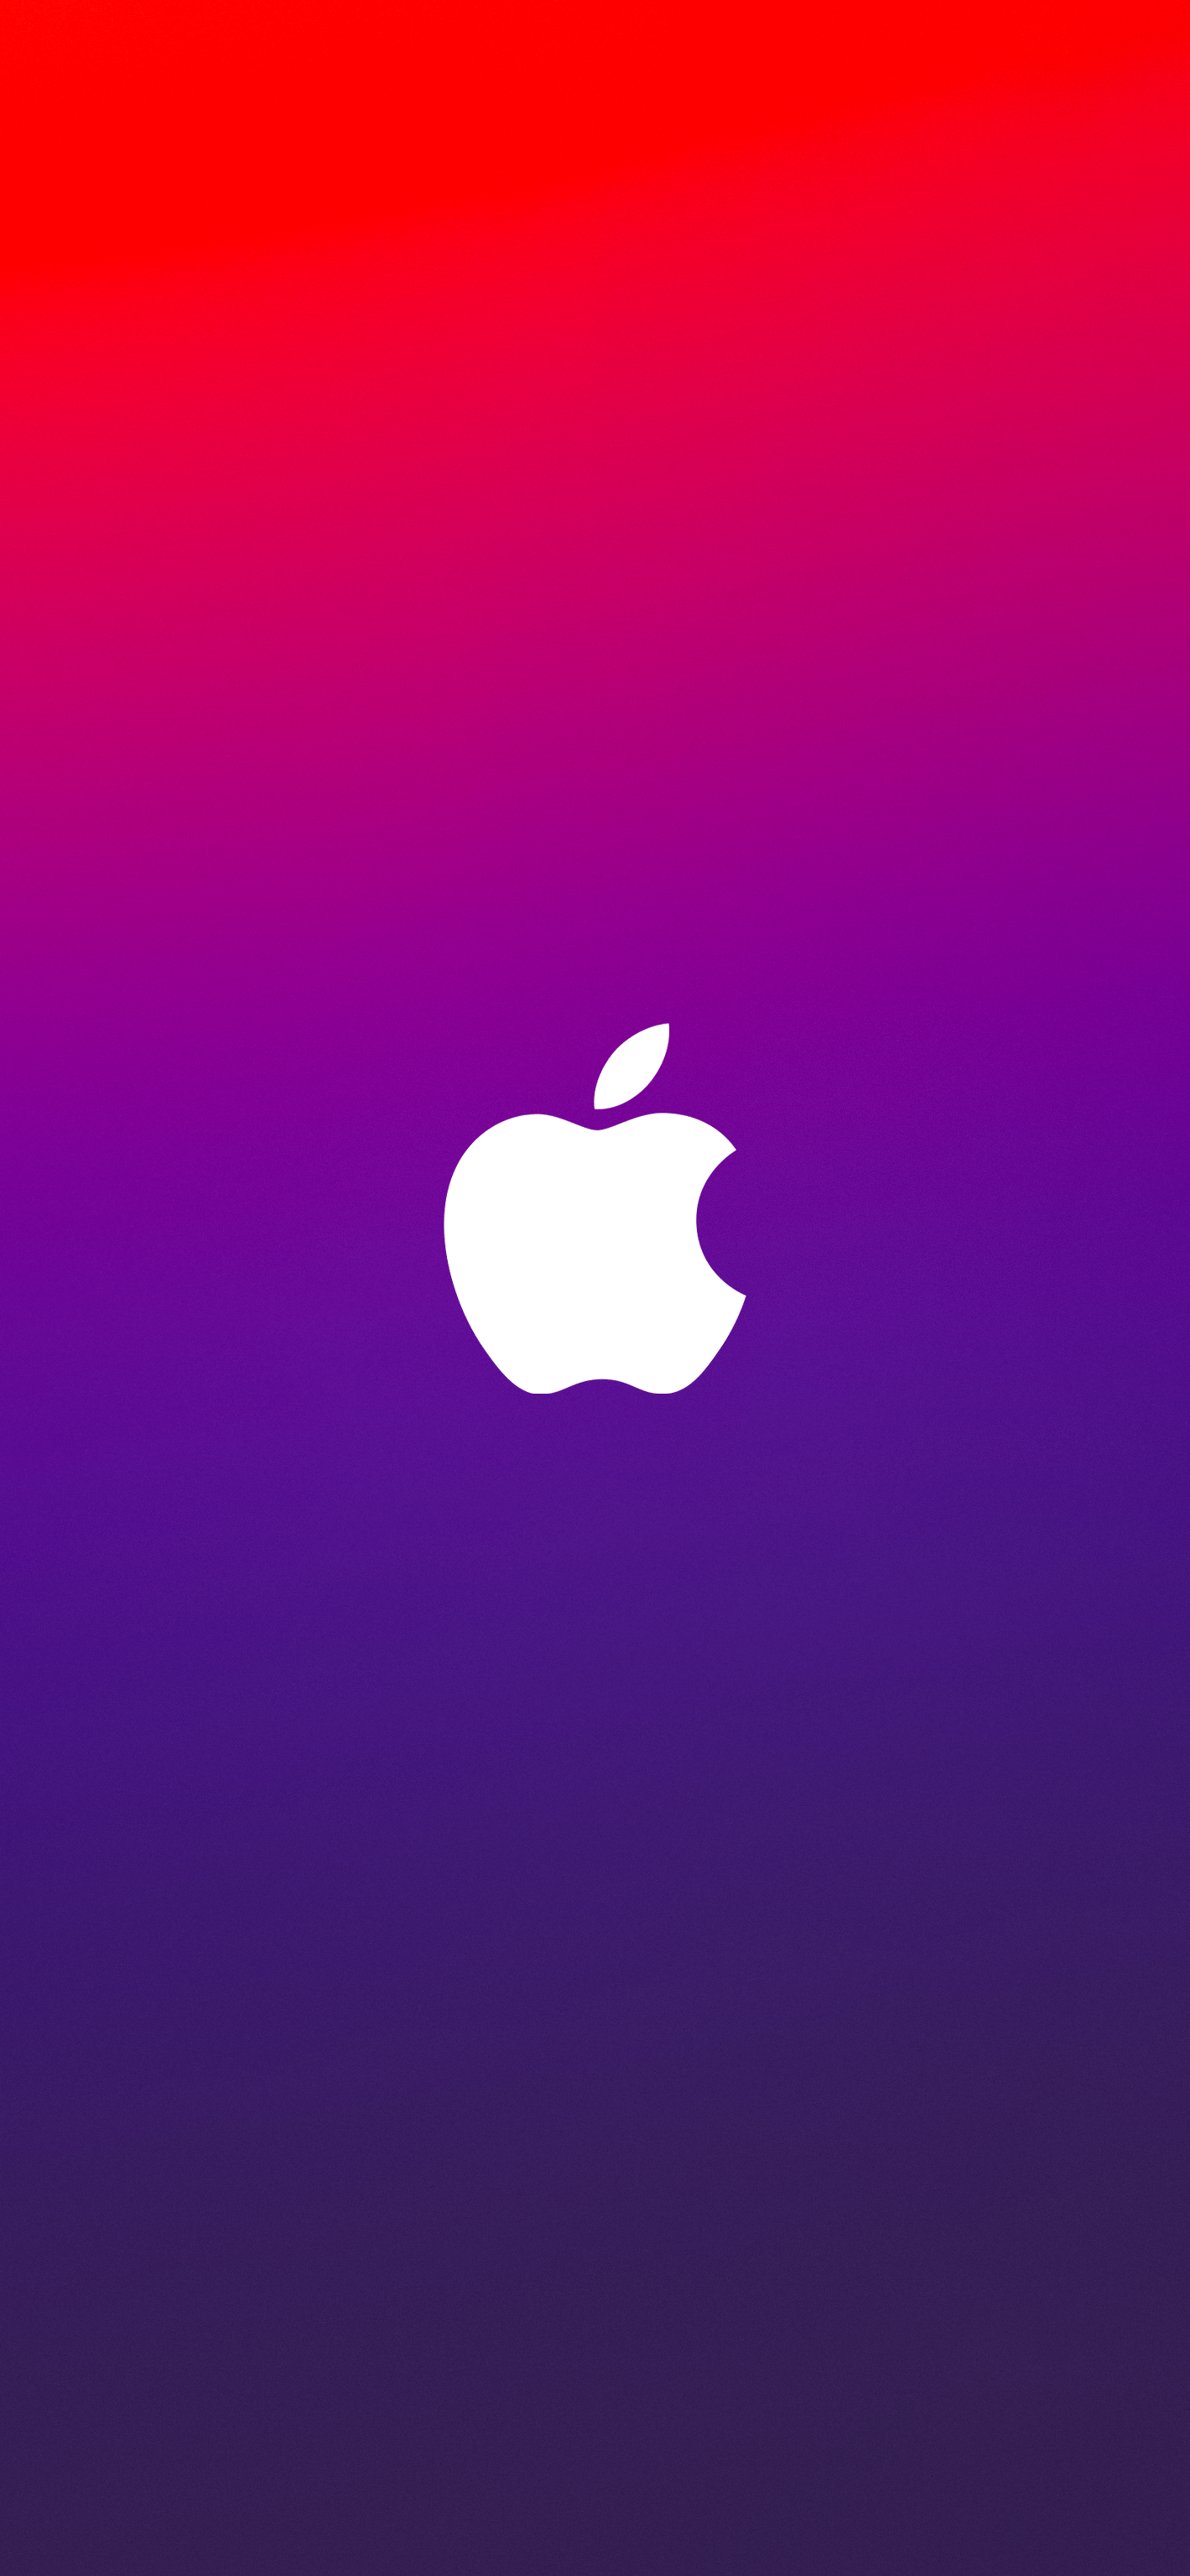 Purple Apple Logo Wallpapers - Top Free Purple Apple Logo Backgrounds ...